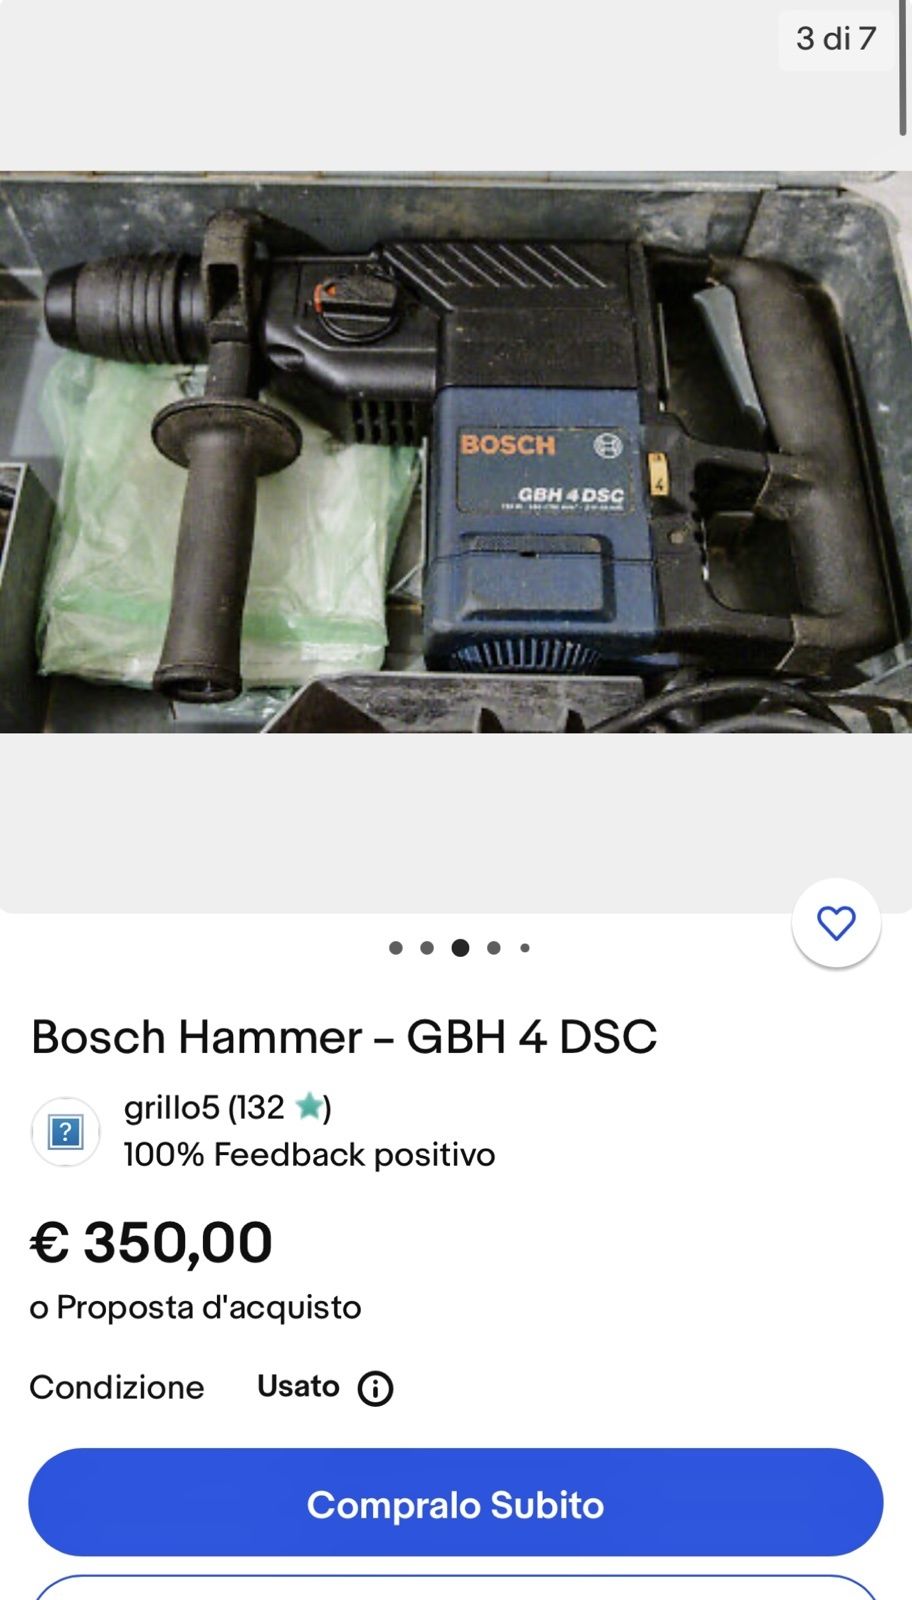 Перфоратор Bosch GBH 4 dsc Boschammer
SDS plus